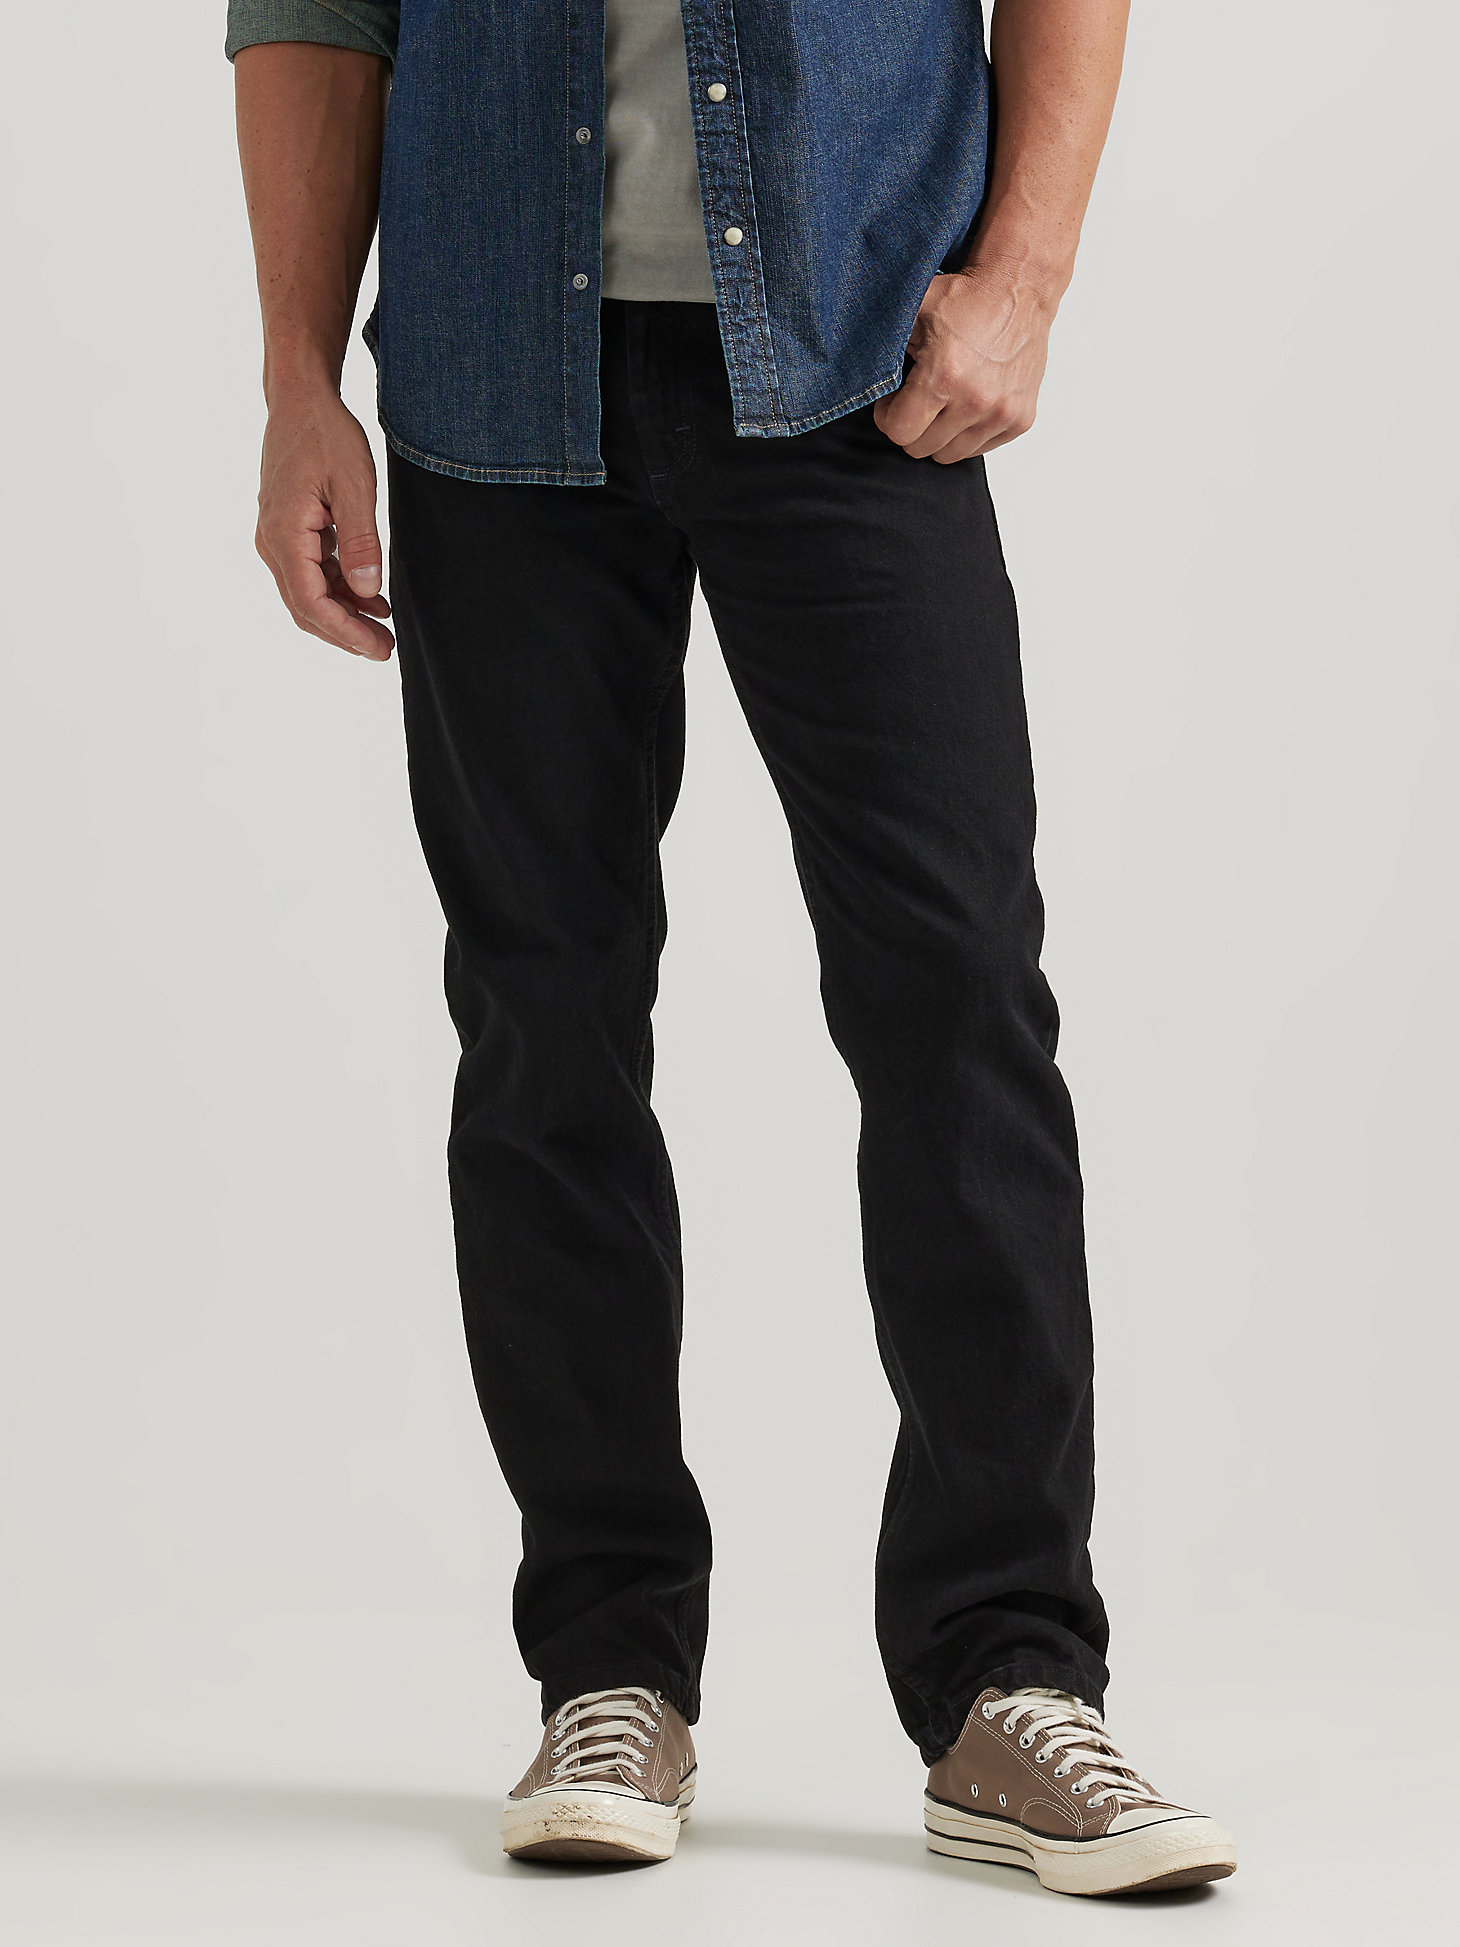 Wrangler® Five Star Premium Denim Regular Fit Jean in Coal Black main view